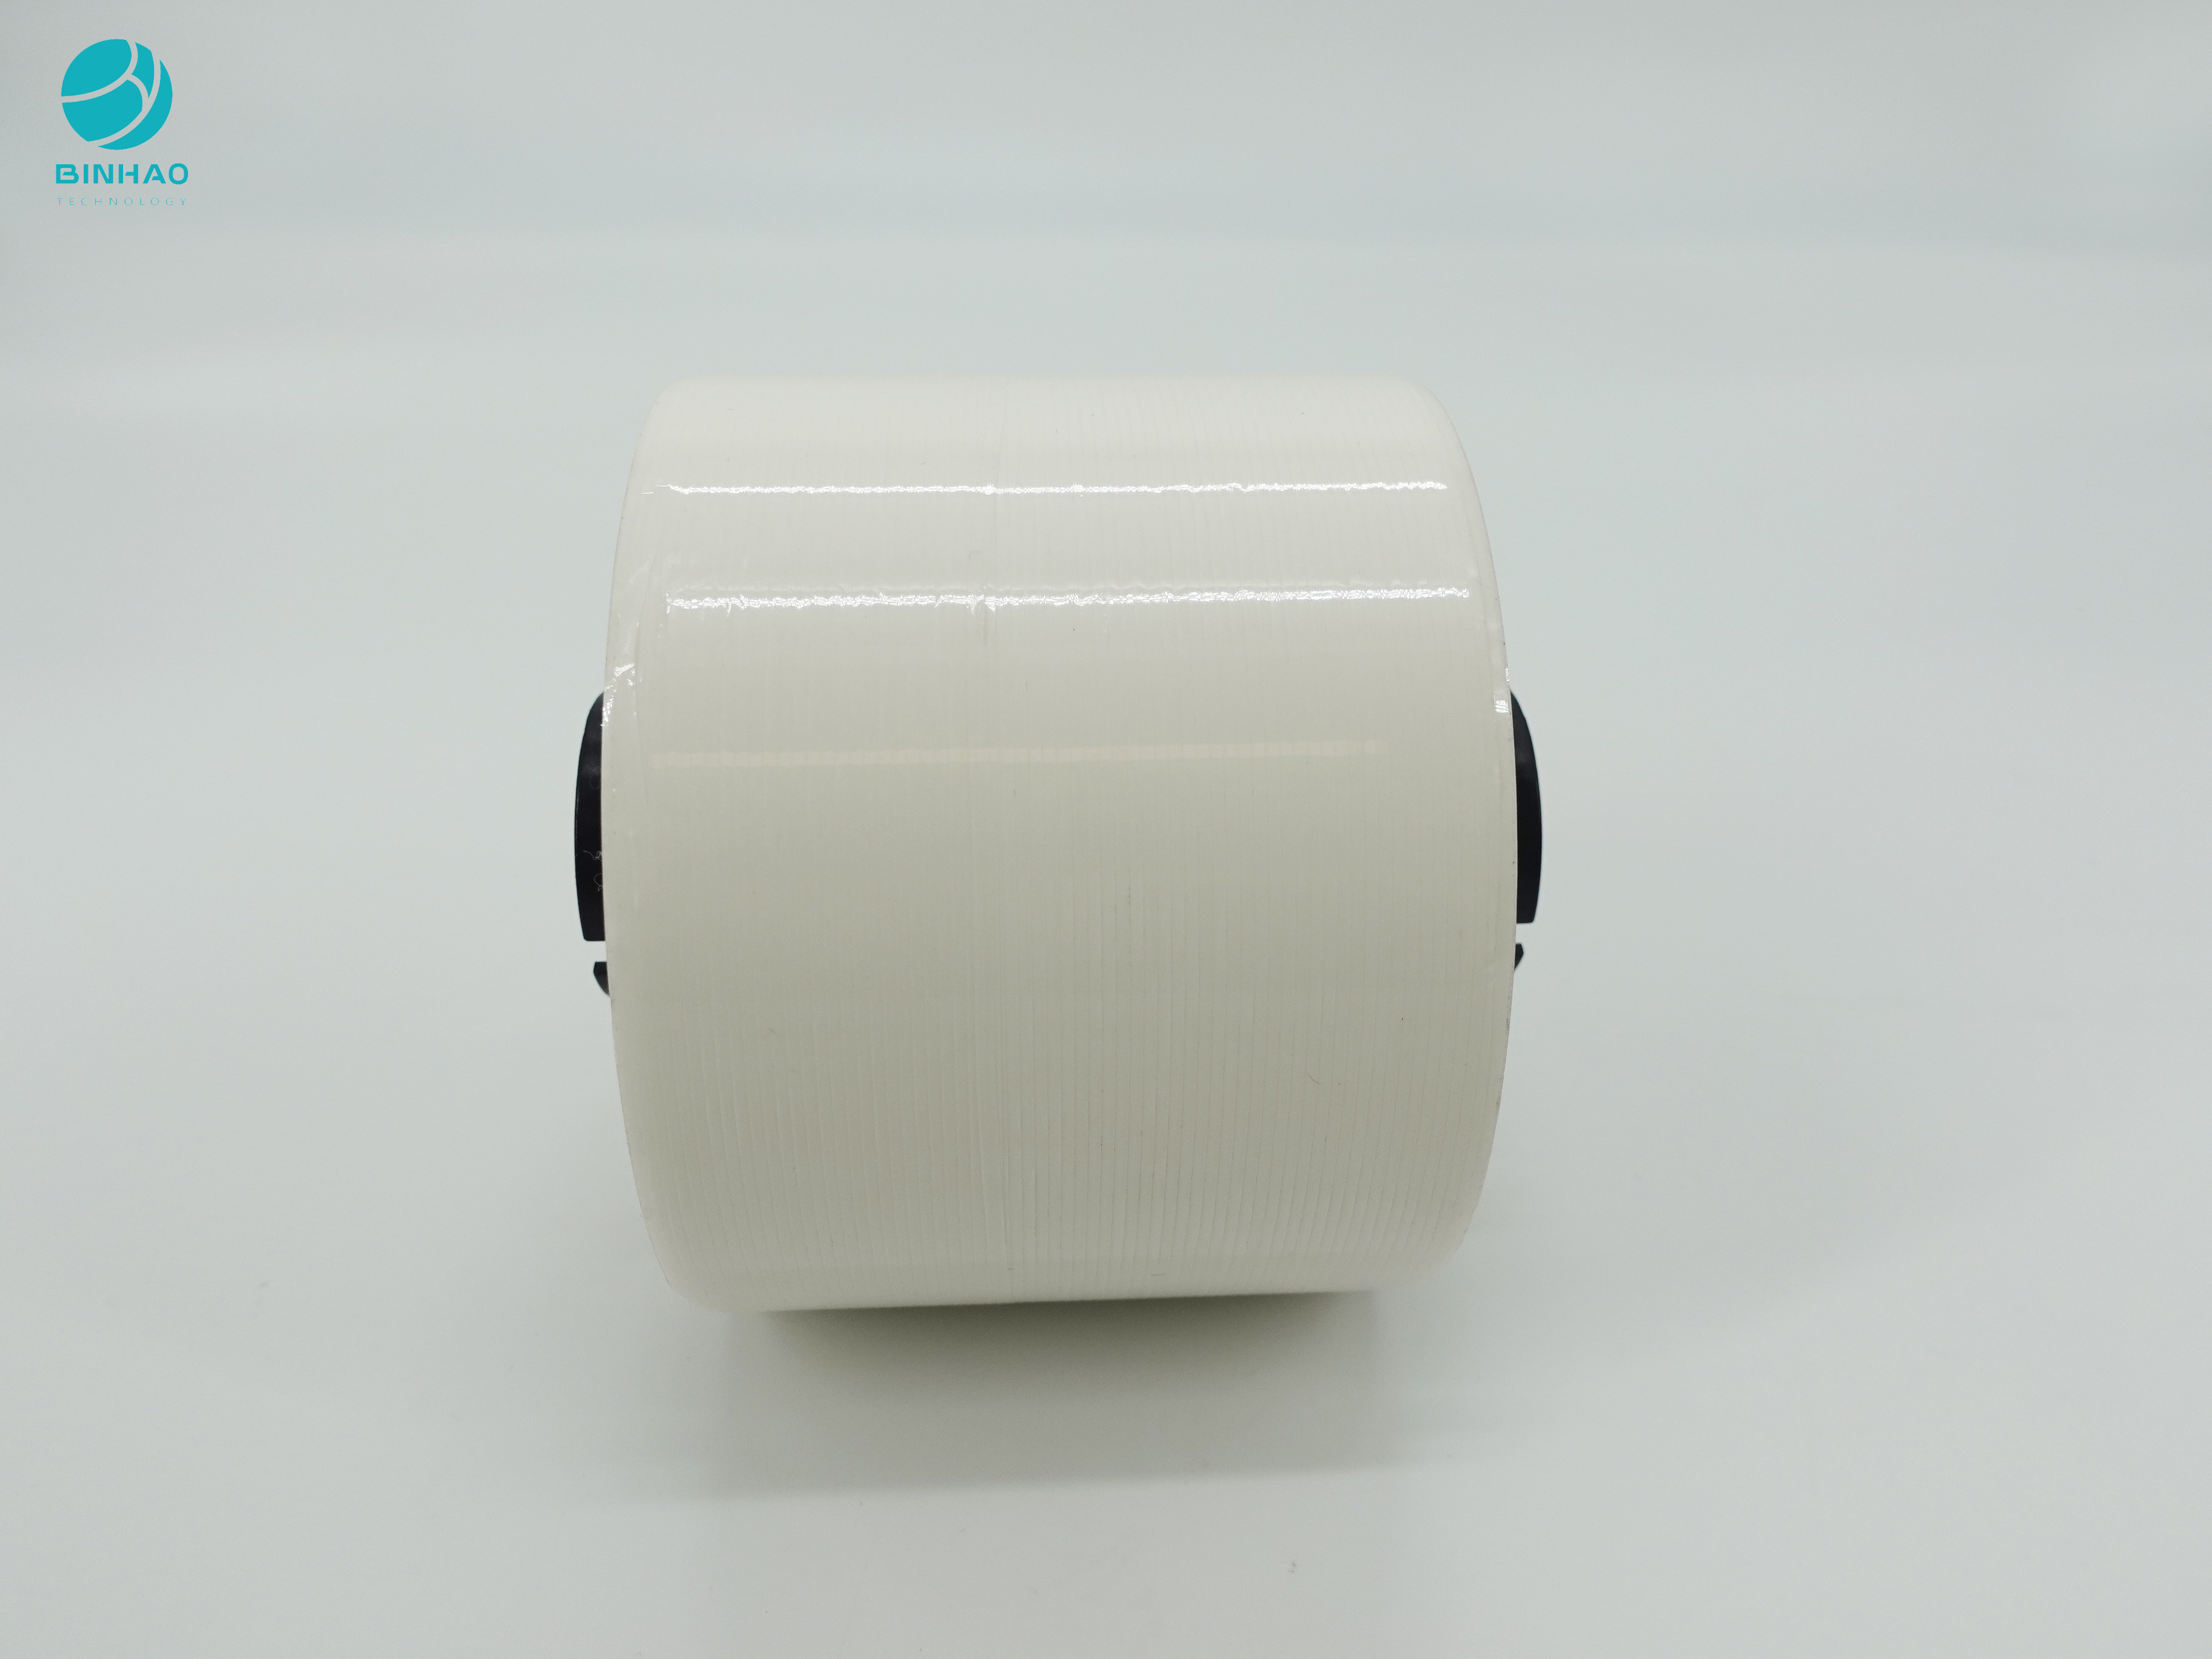 προσαρμοσμένο ρόλοι λογότυπο ταινιών δακρυ'ων 1.65mm άσπρο Mopp αυτοκόλλητο για τη συσκευασία